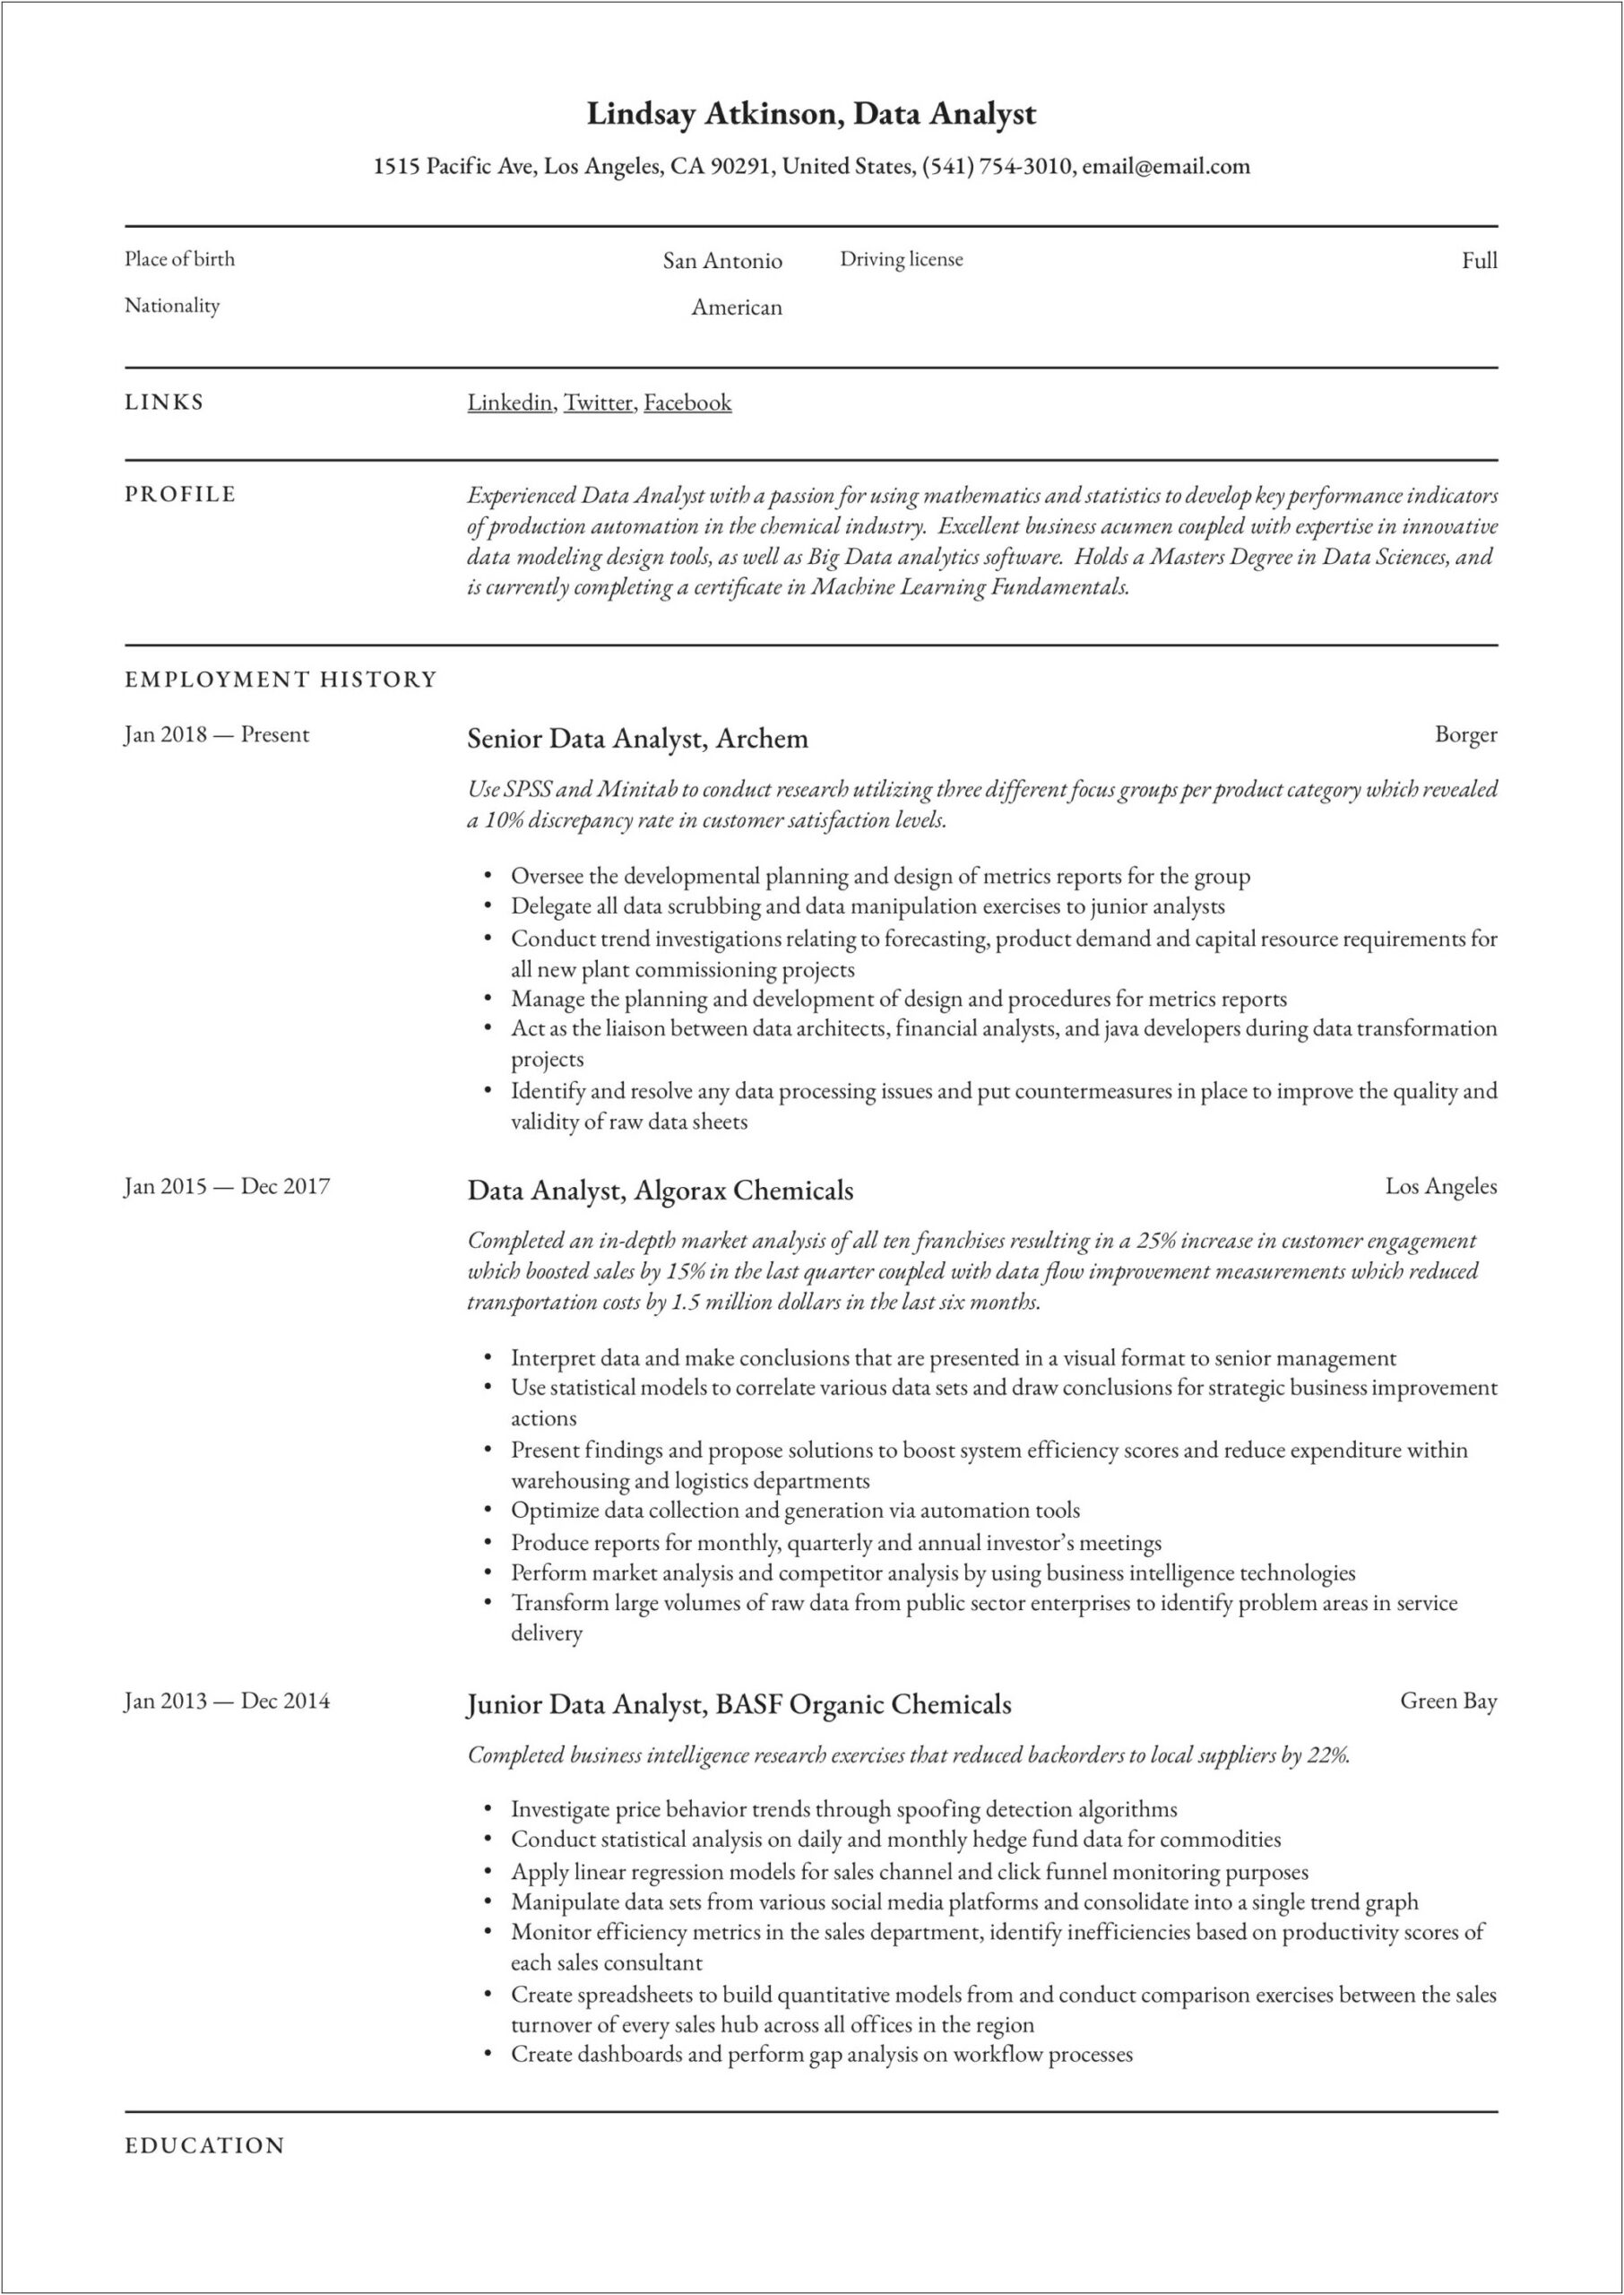 Data Analyst Job Description Samples For Resume